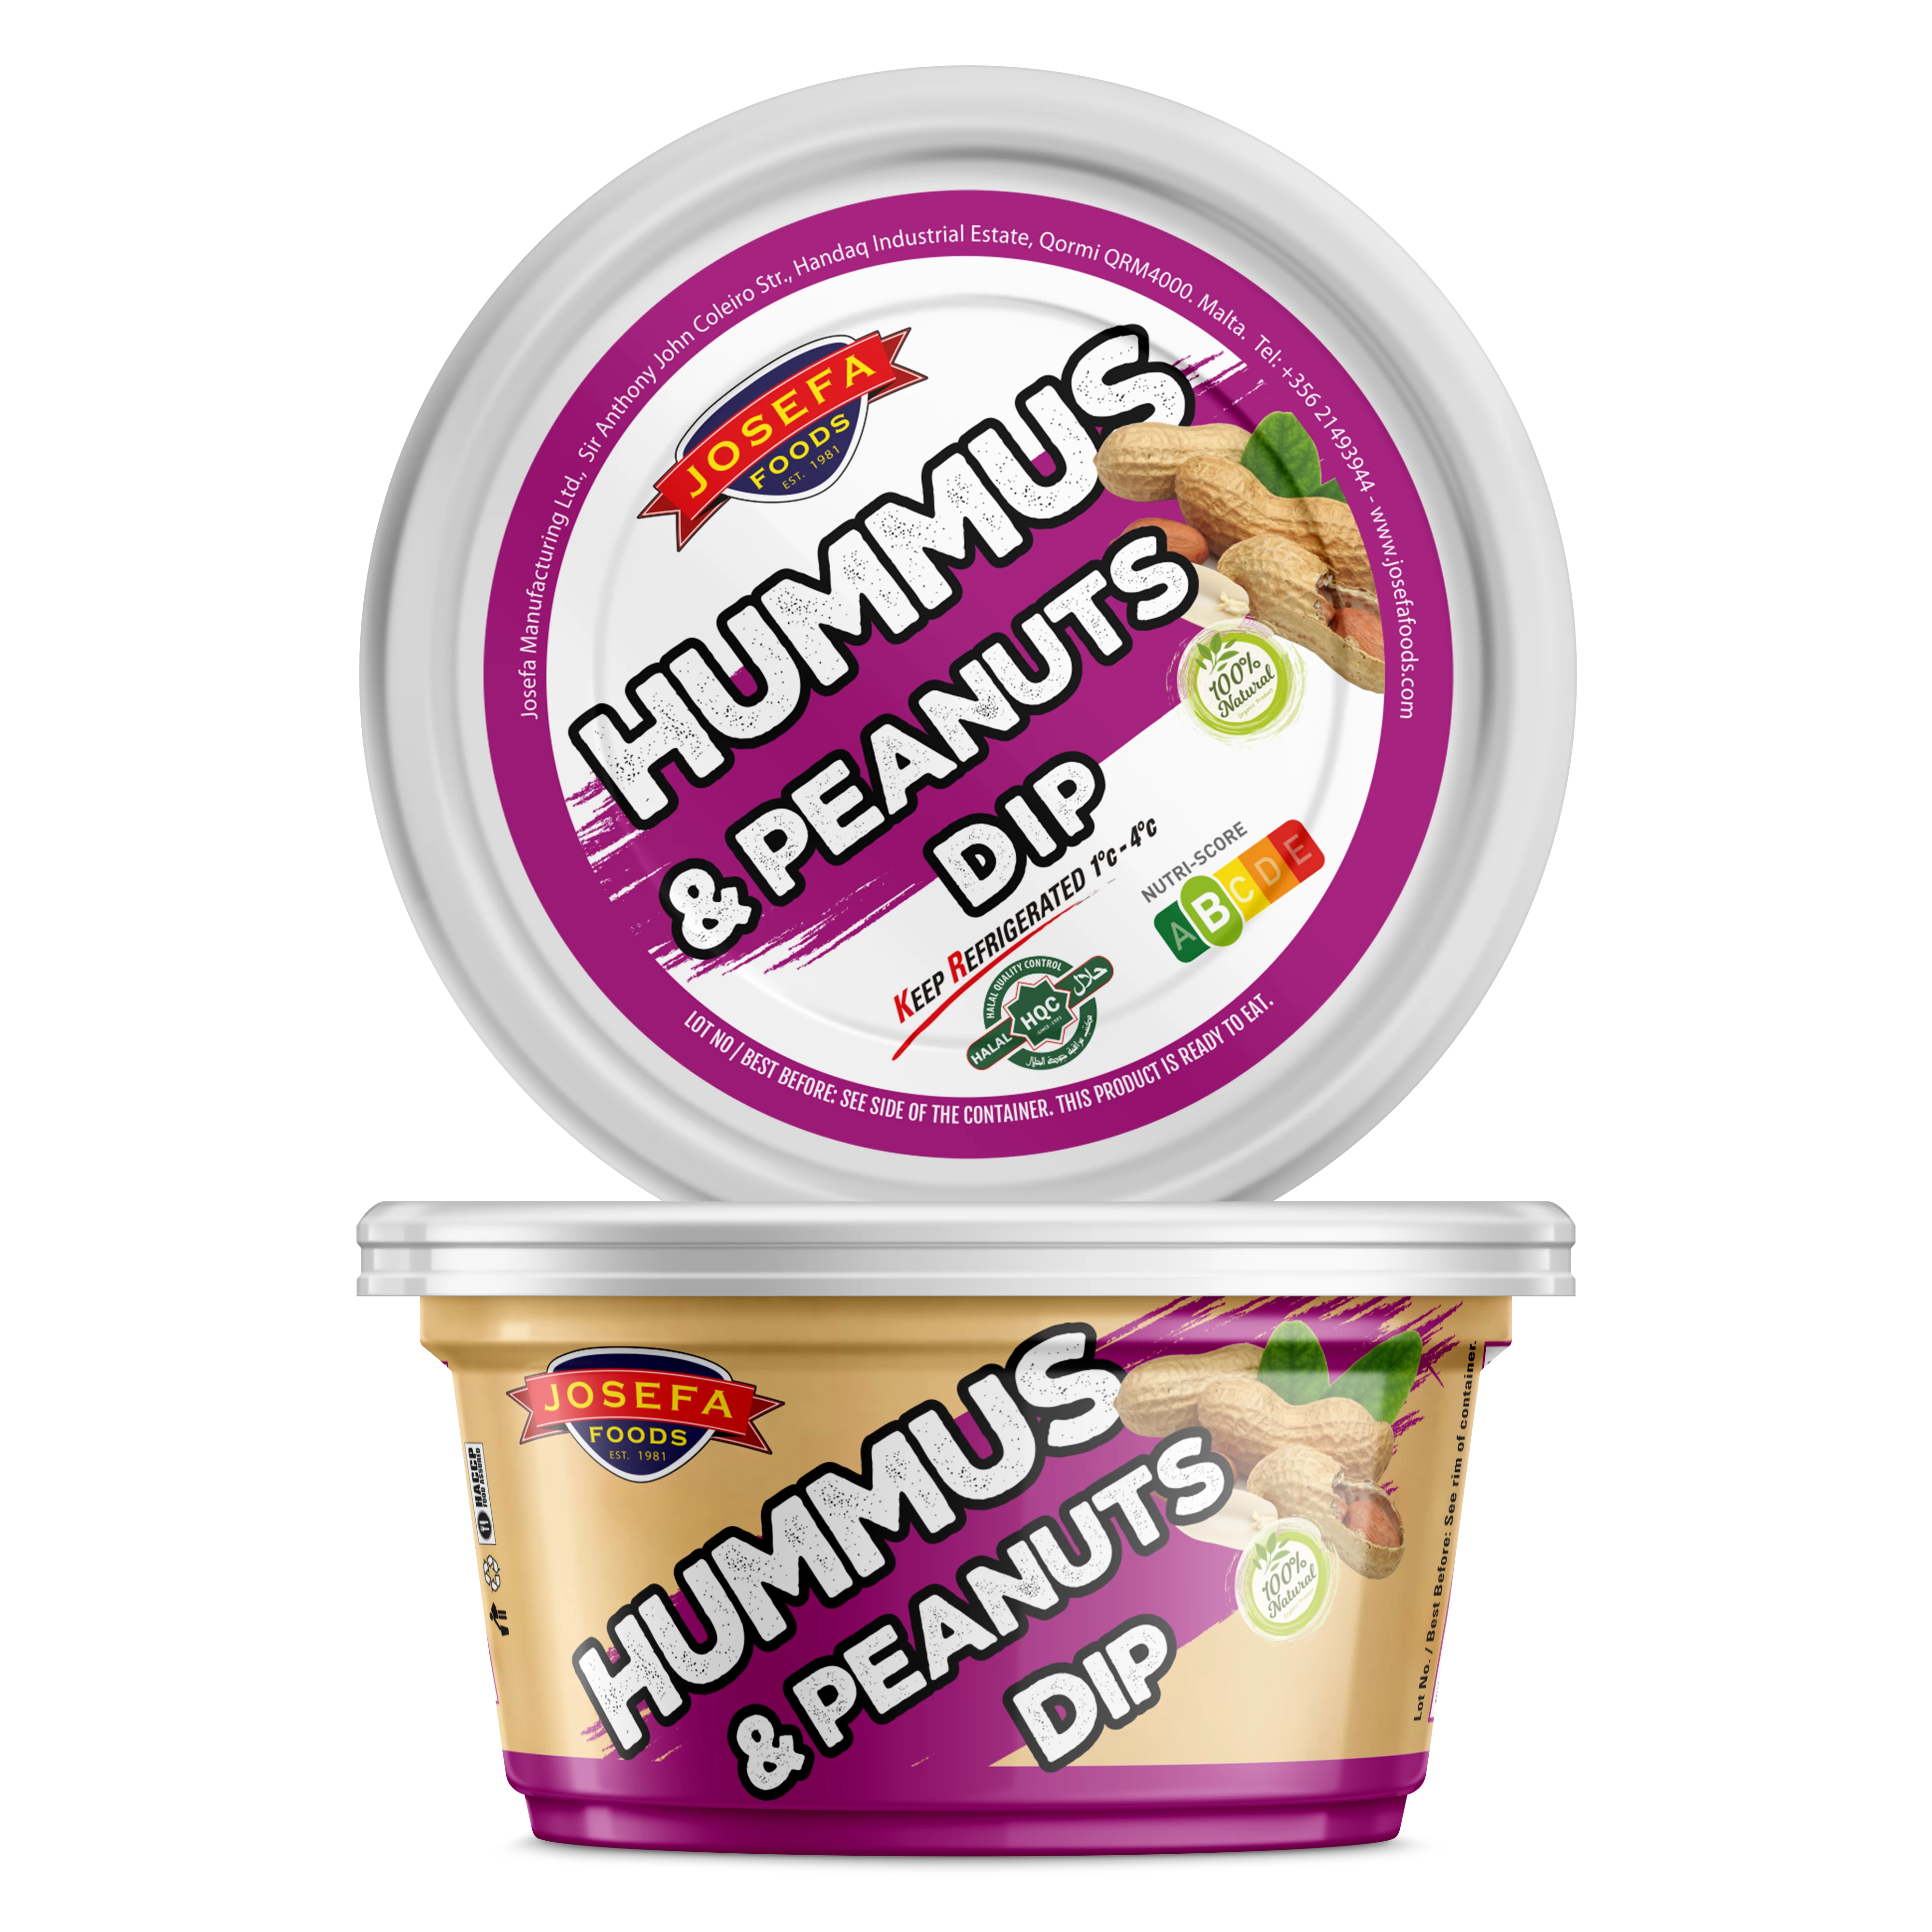 Hummus & Erdnüsse Dip 195gr - Josefa